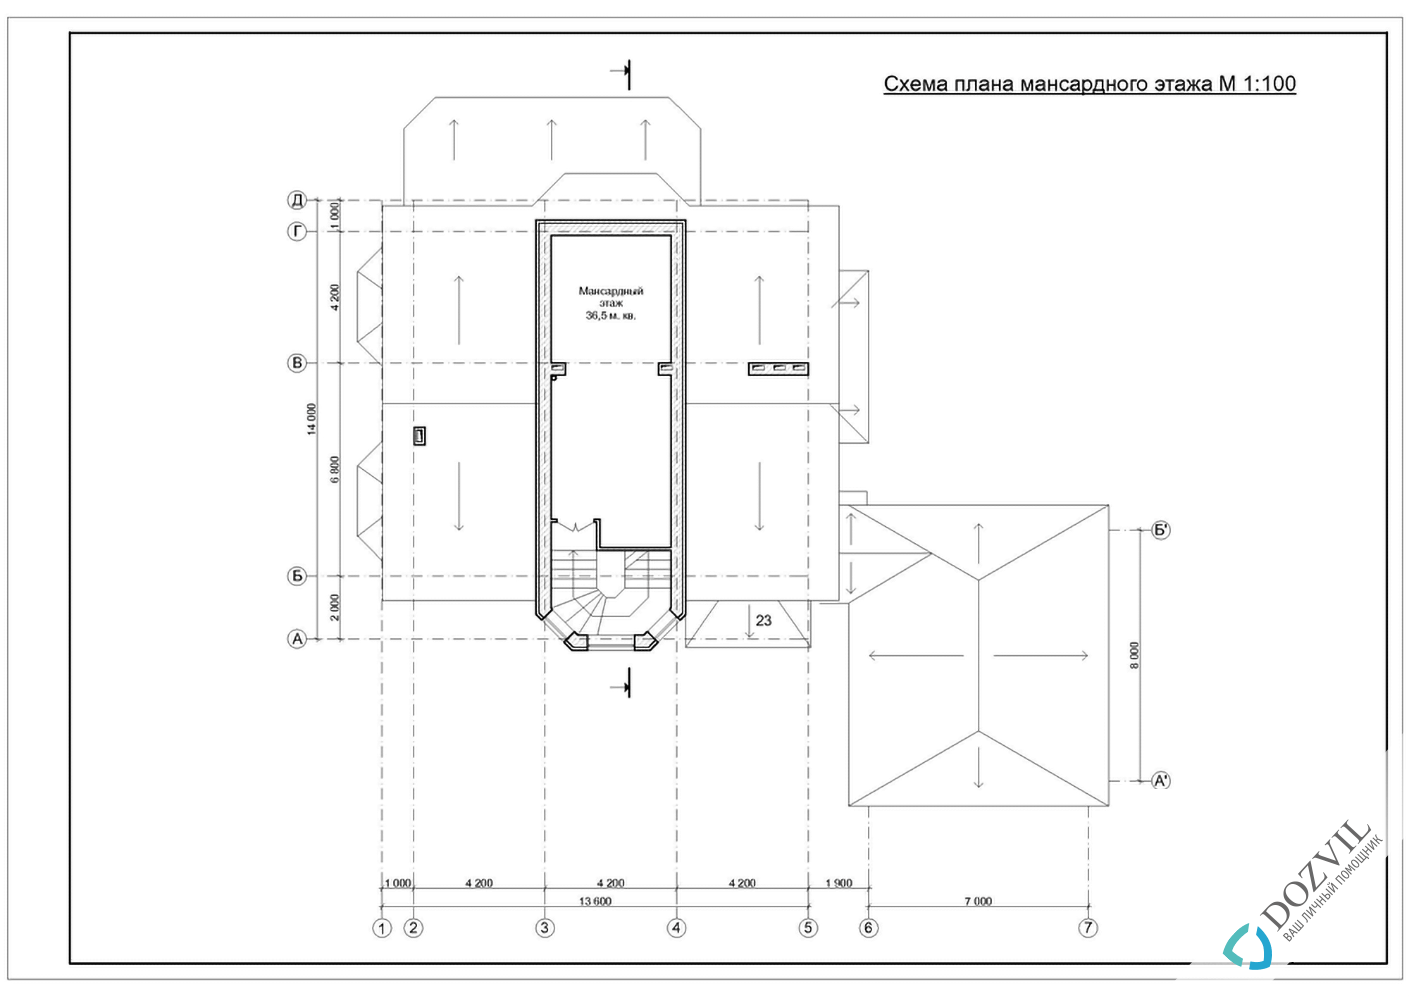 Оформлення гаража > Гараж на ділянці поруч з житловим або садовим будинком > 2 етап - Розробка ескізу намірів будівництва